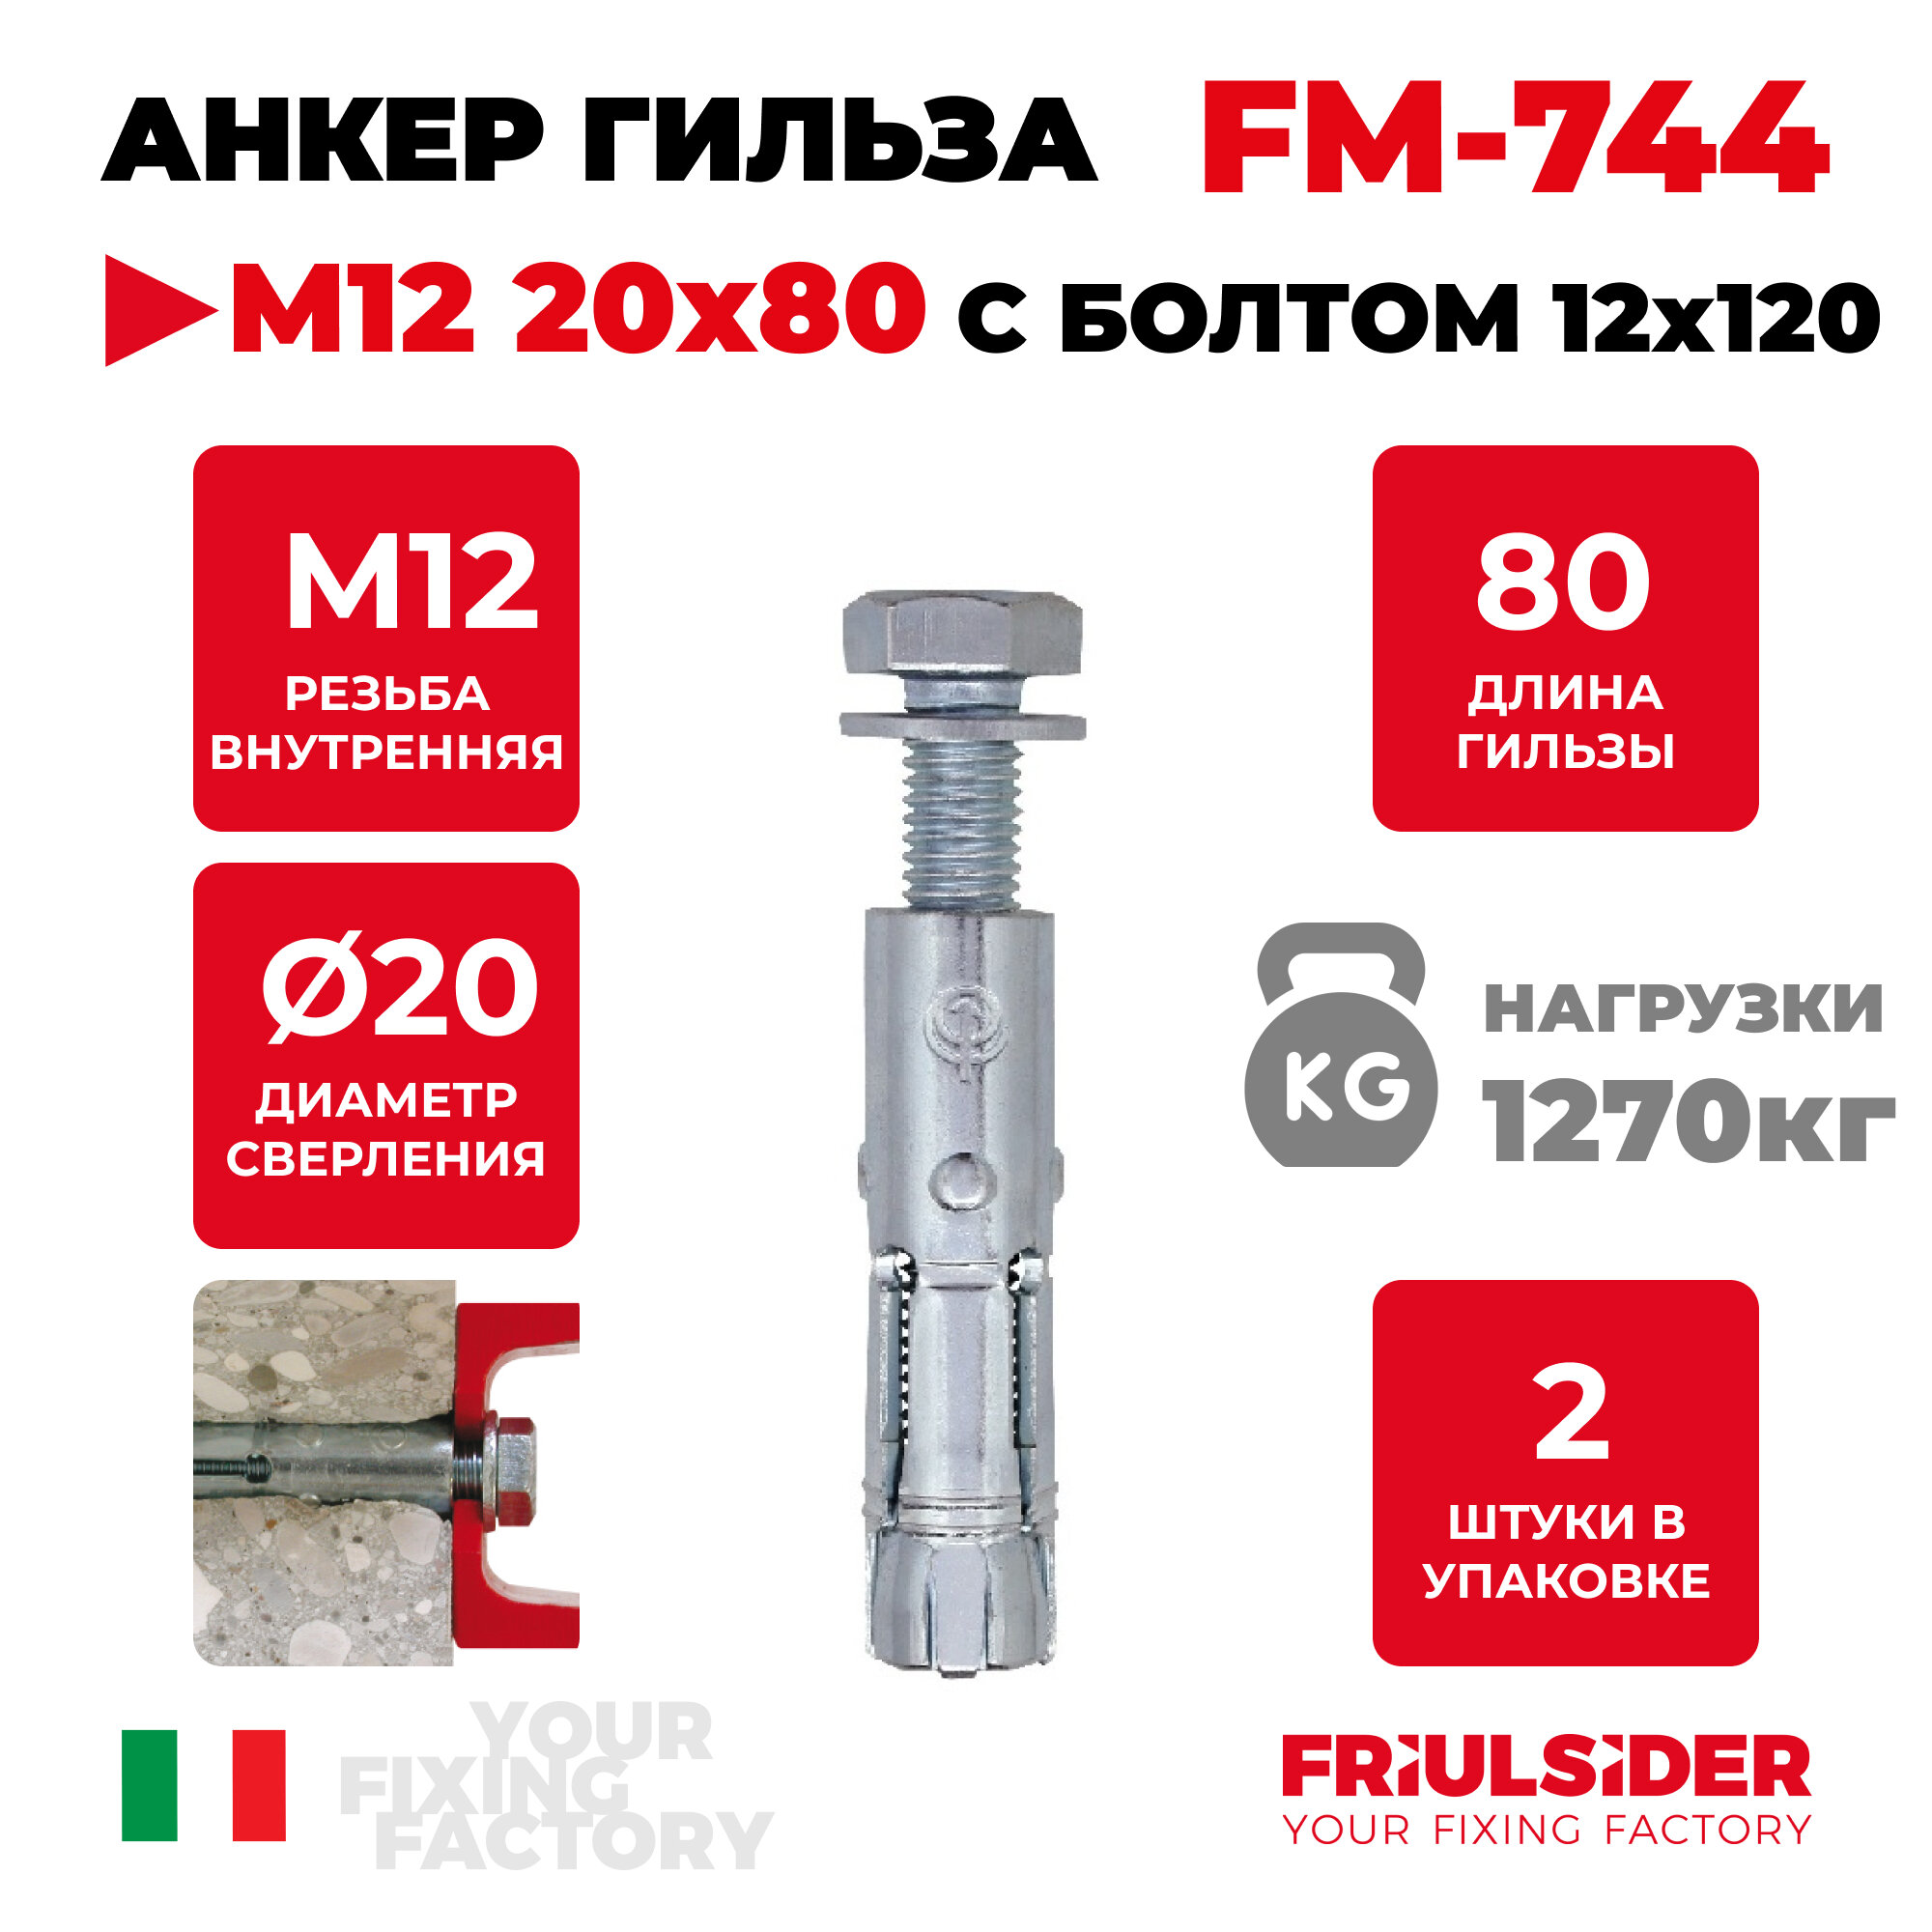 Анкер распорный FM744 М12 с болтом 12х120 ZN (2 шт) - FRS - пакет Партнер